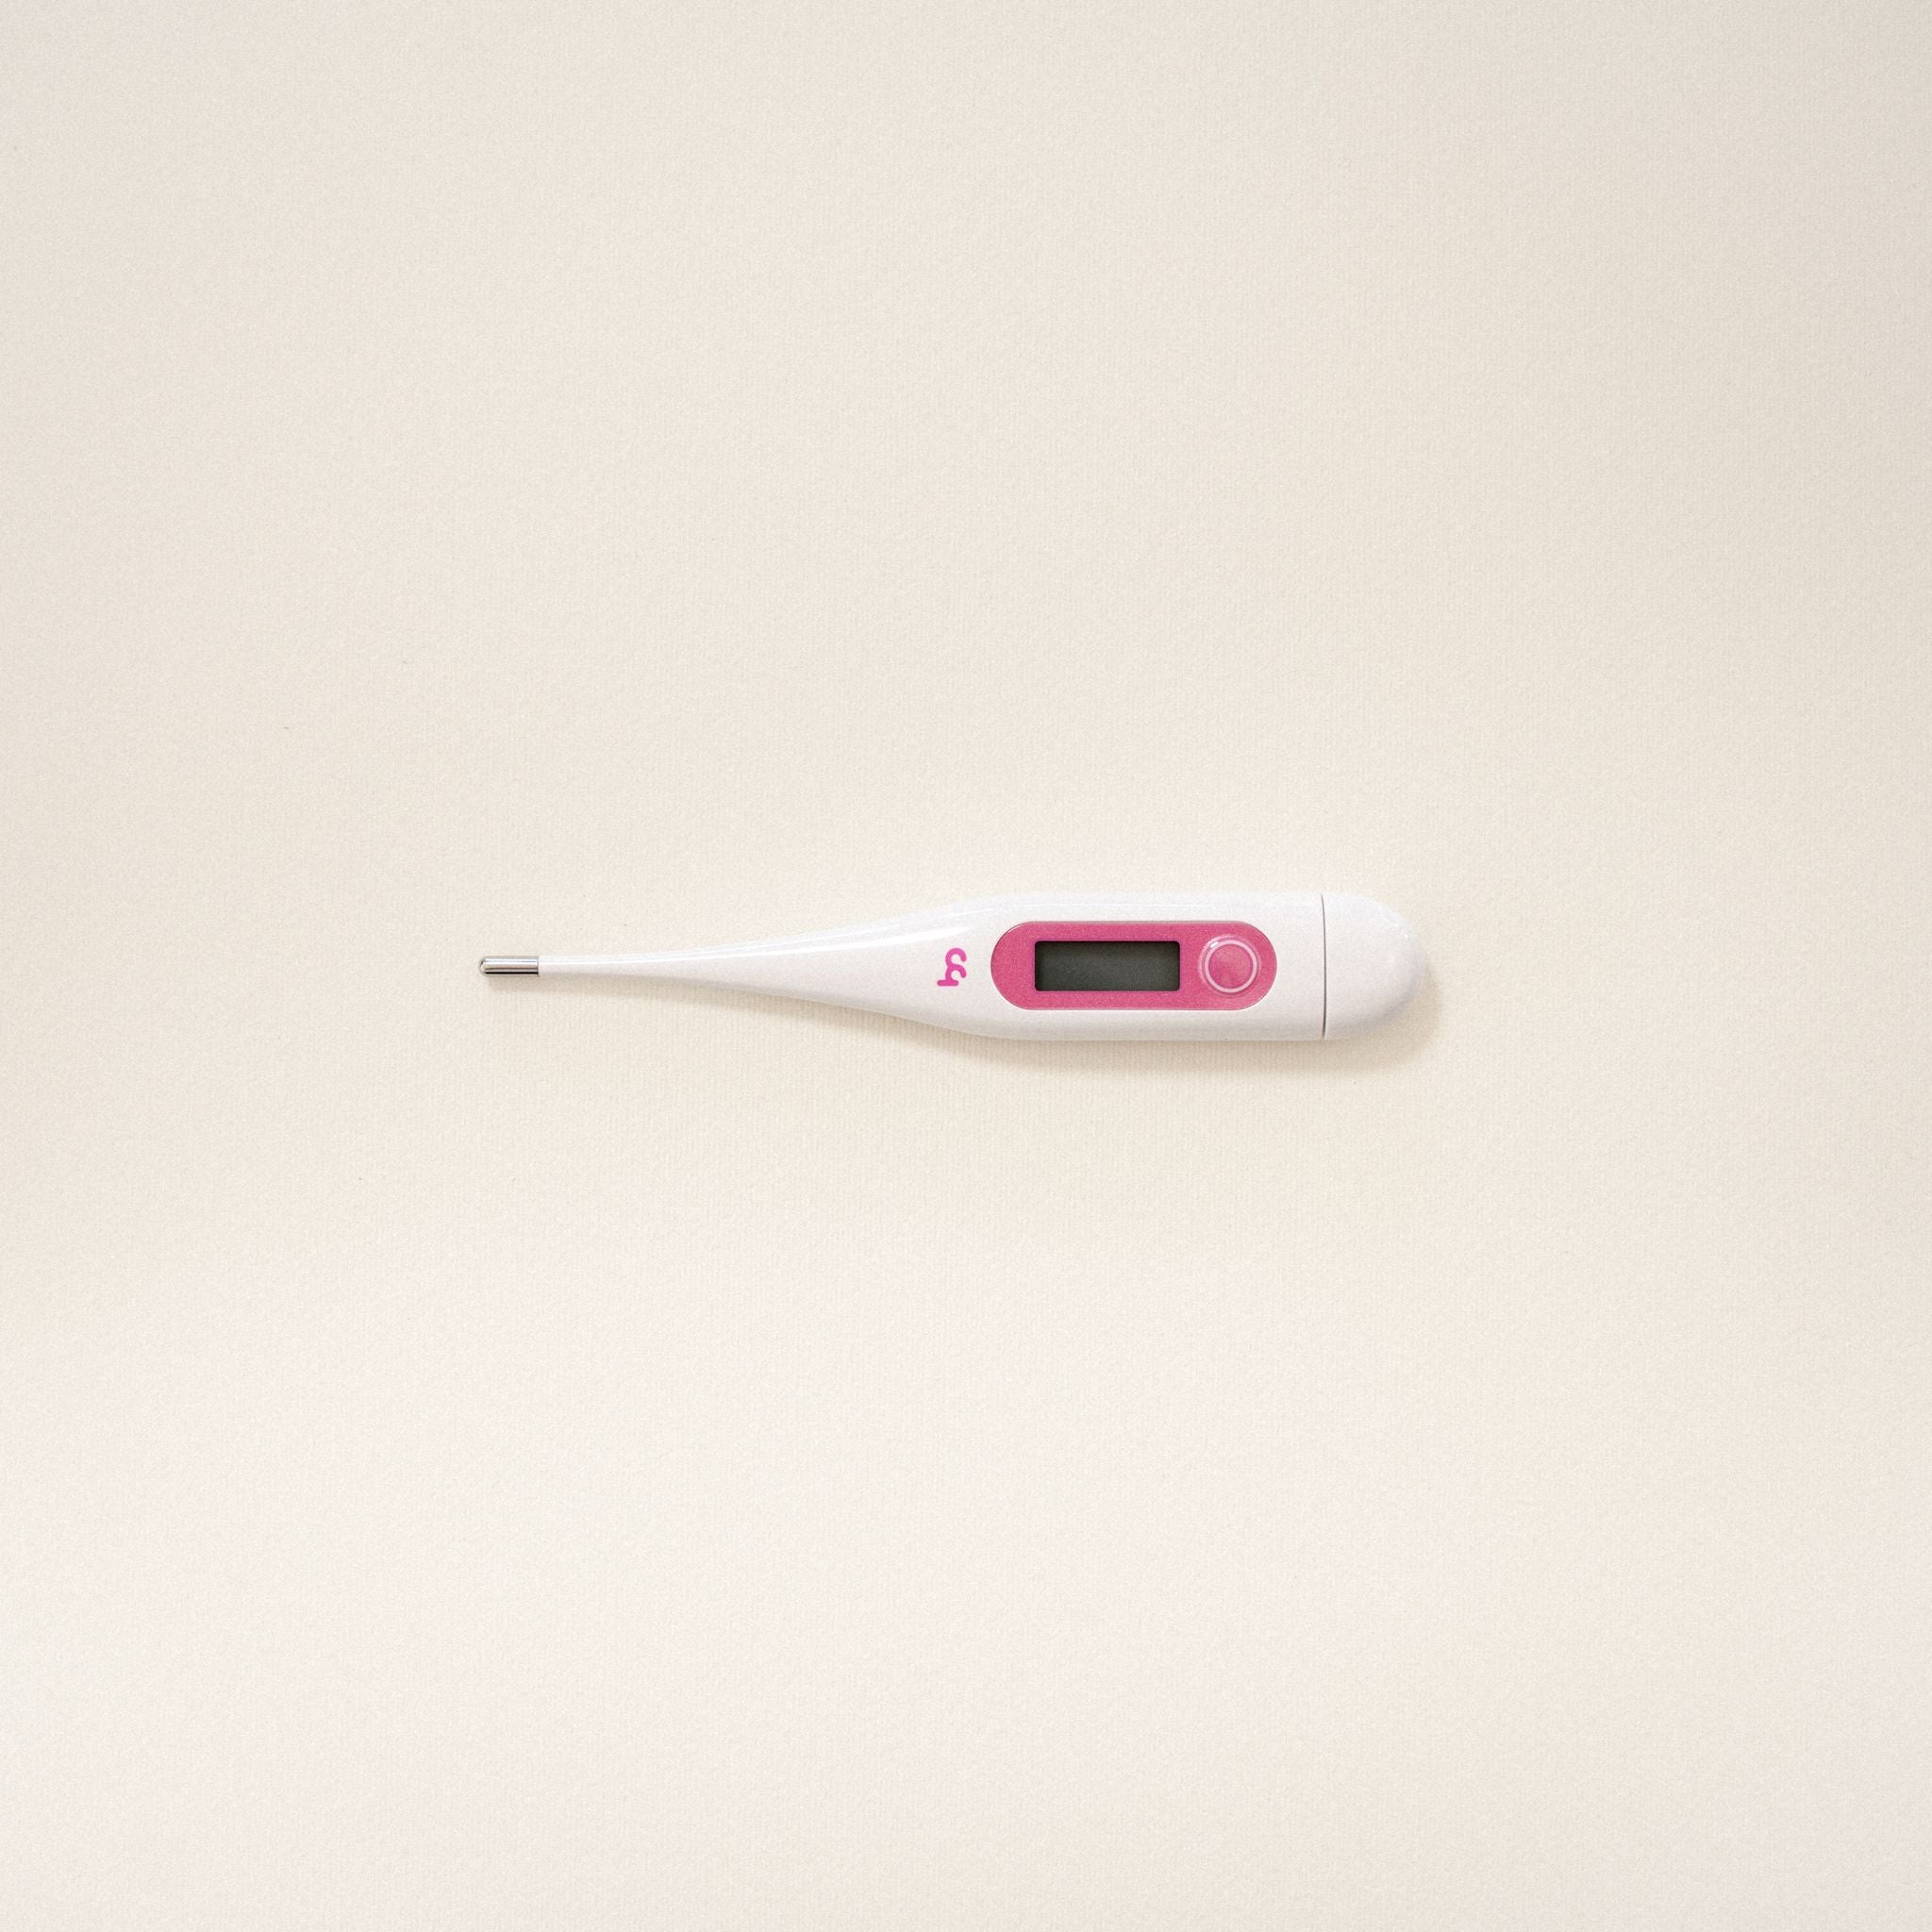 Valmed Ovulation Test Strip. 10. pcs. + Valmed Pregnancy Test Strip. 5 pcs. + Valmed Thermometer